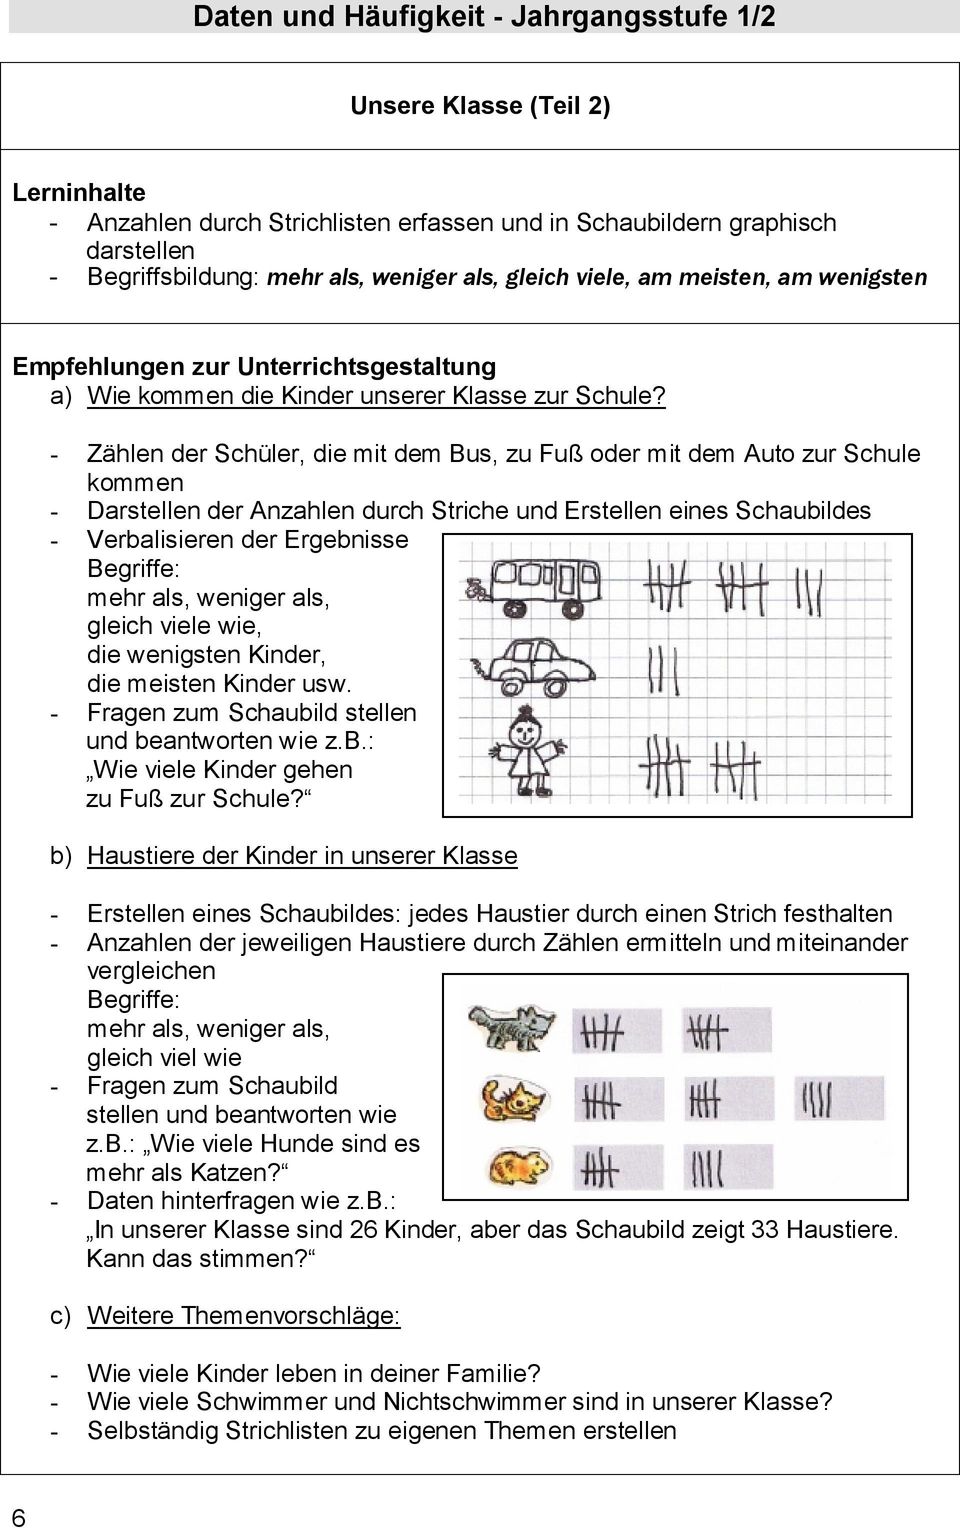 - Zählen der Schüler, die mit dem Bus, zu Fuß oder mit dem Auto zur Schule kommen - Darstellen der Anzahlen durch Striche und Erstellen eines Schaubildes - Verbalisieren der Ergebnisse Begriffe: mehr